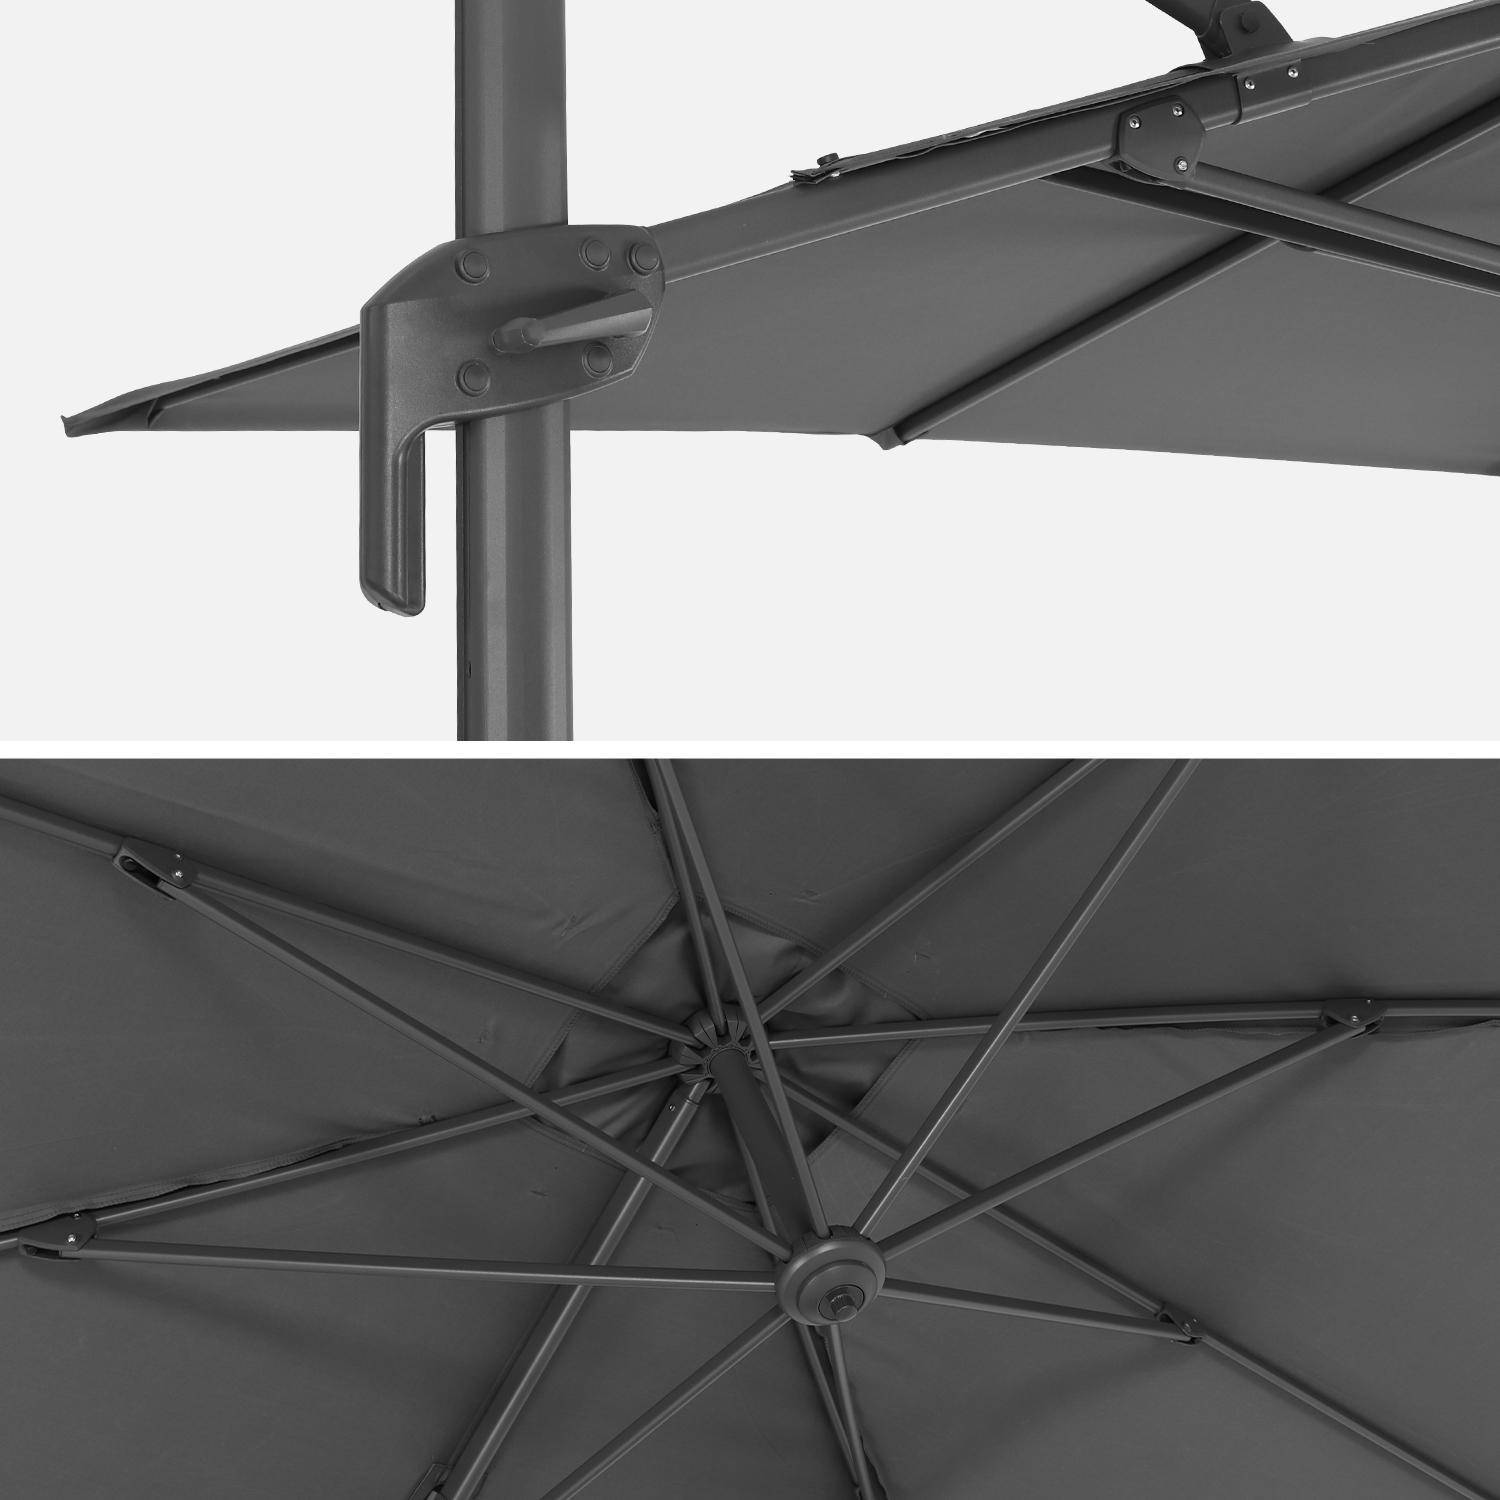 Parasol rectangular desplazado 2x3m - Antibes - Gris - Parasol desplazado que se puede inclinar, plegar y girar 360°.,sweeek,Photo7